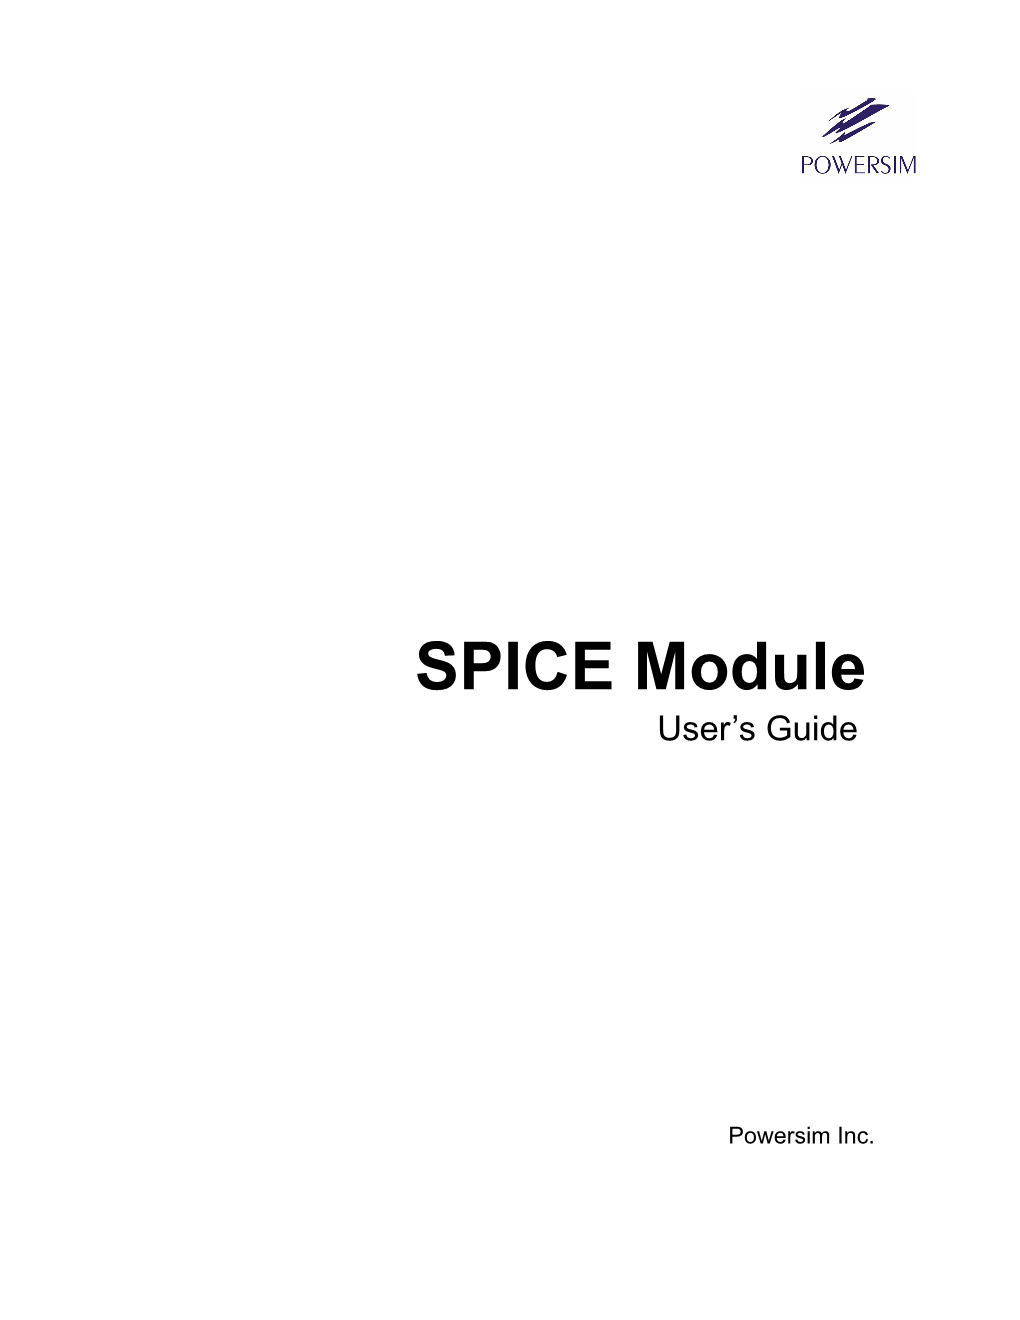 SPICE Module User’S Guide